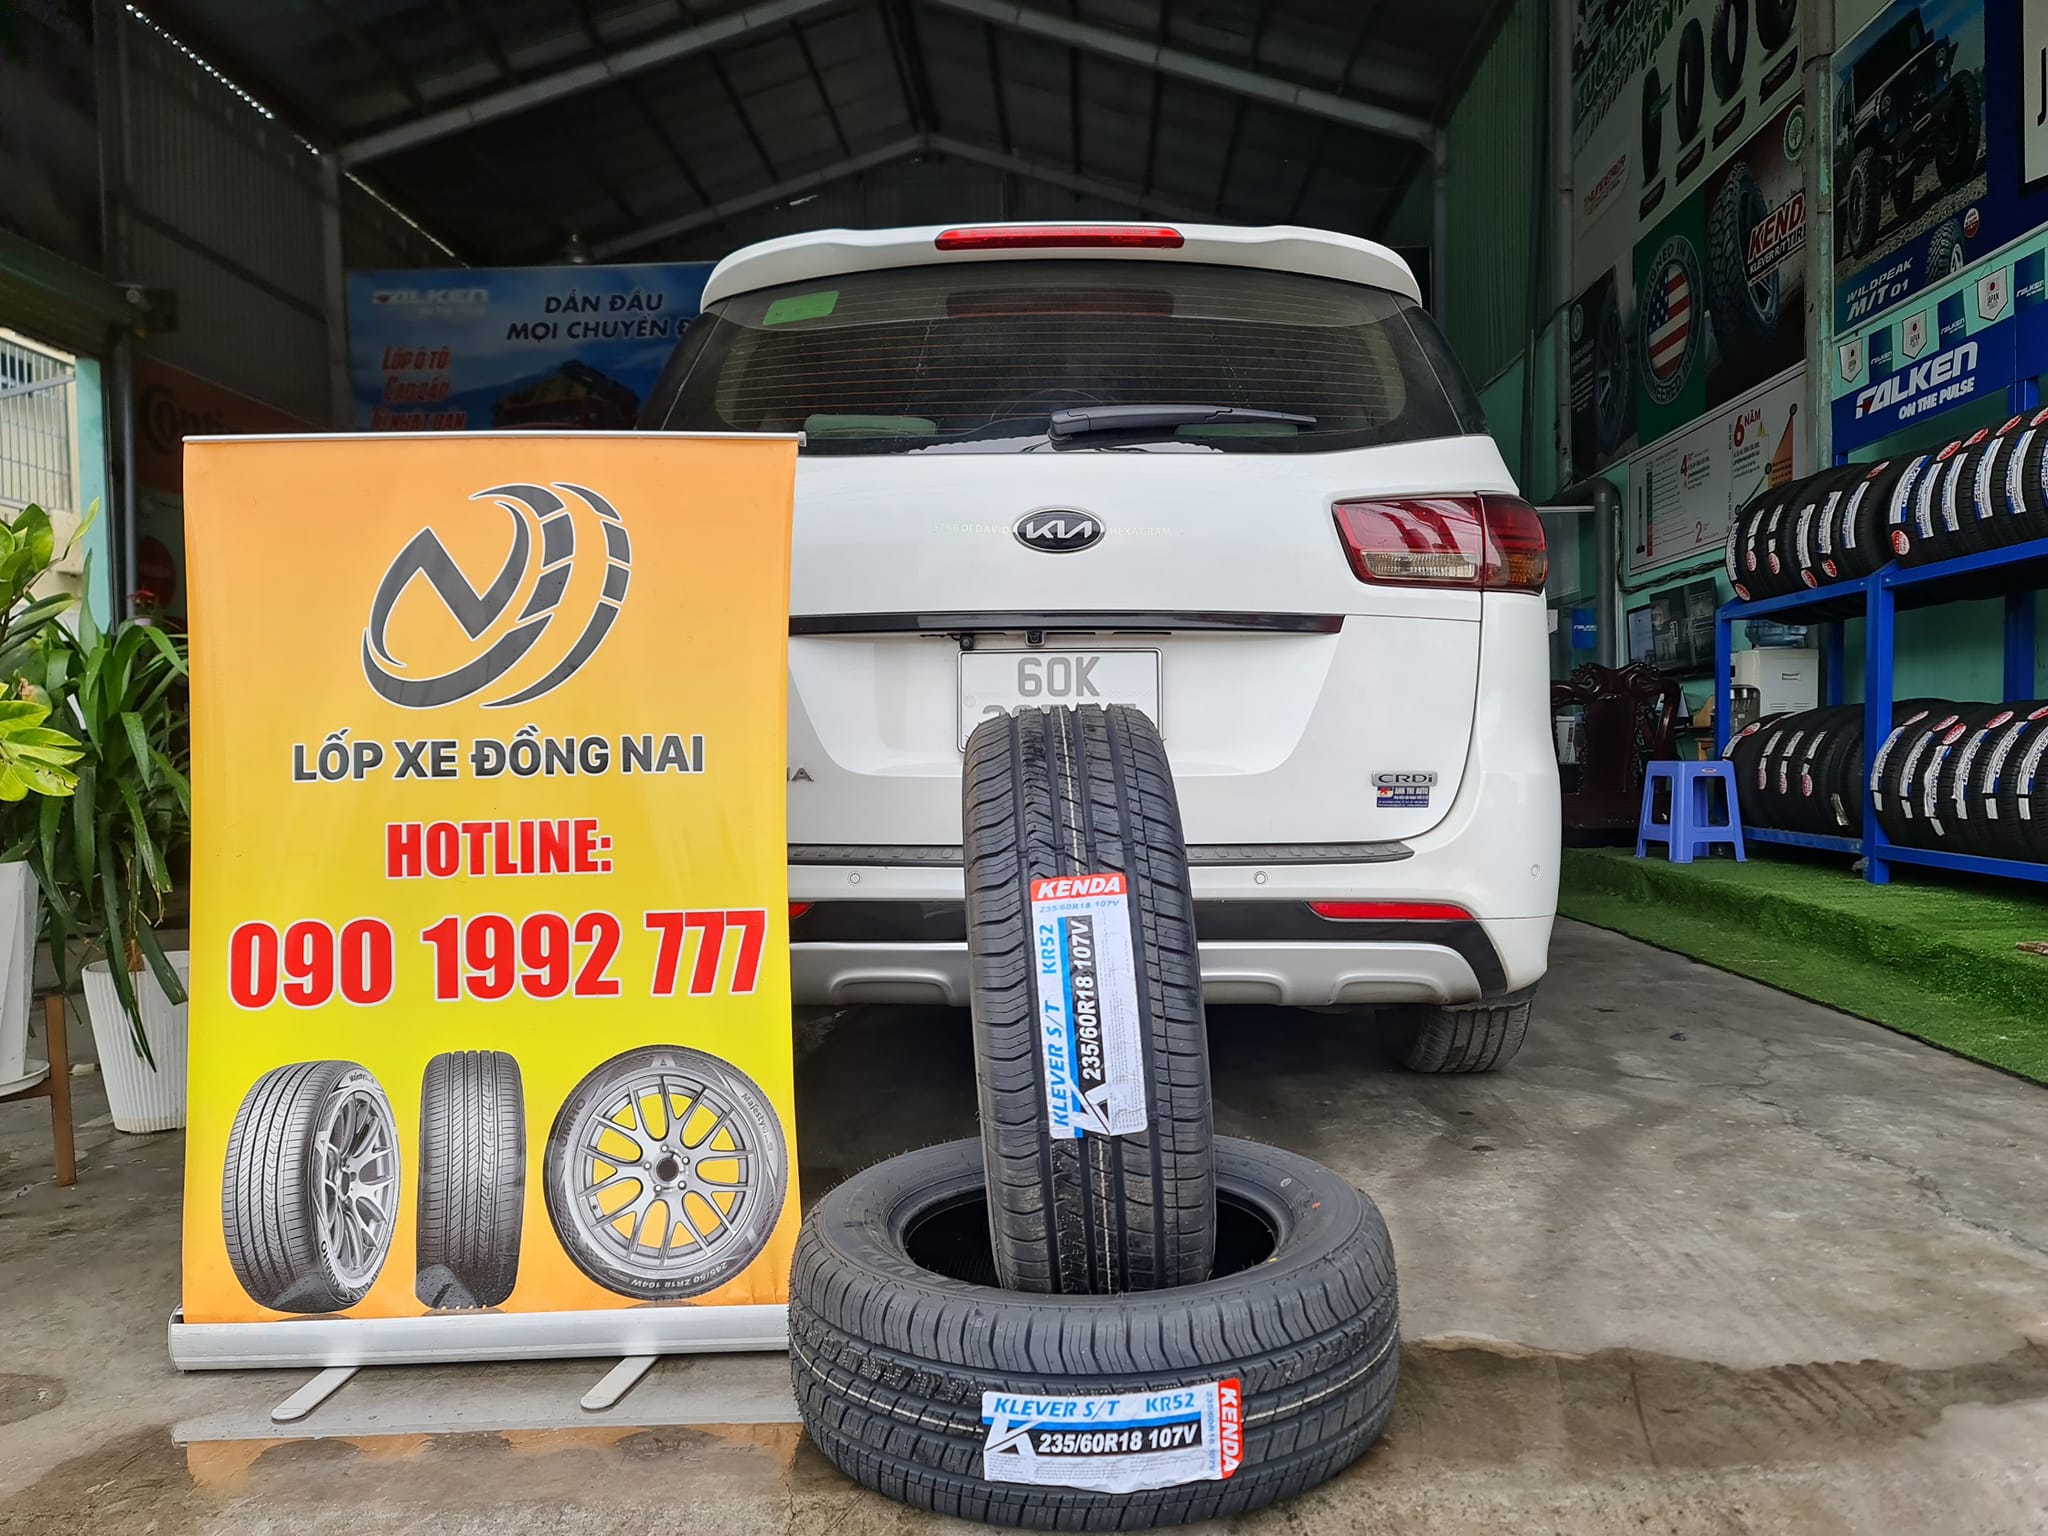 TƯ VẤN : Thay lốp xe Kia Sedona ở Biên Hoà, Đồng Nai.